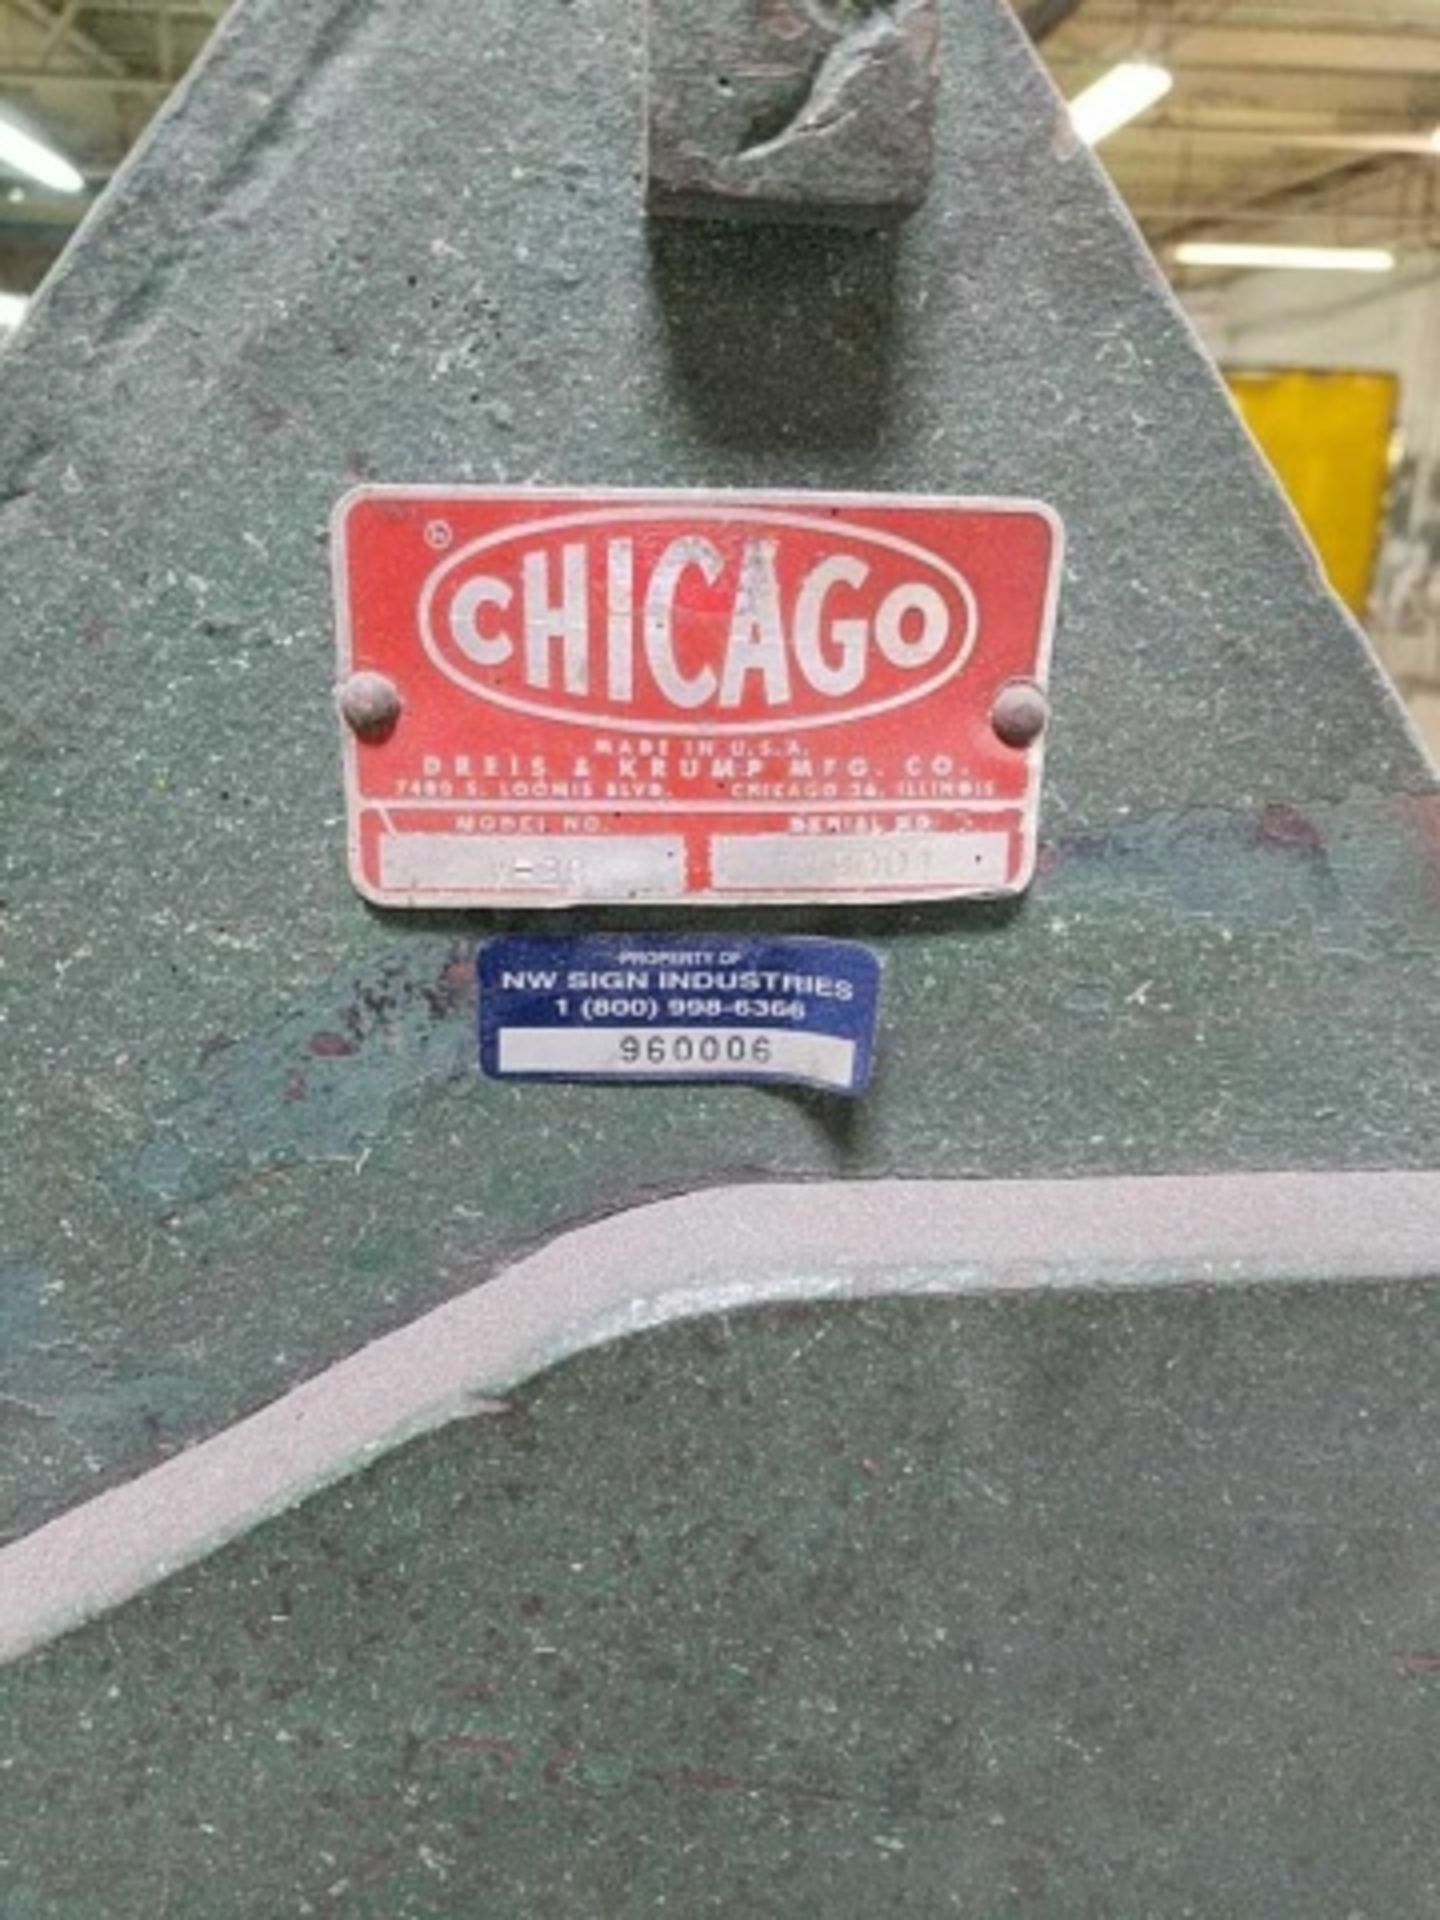 Chicago W-39 Finger Brake - Image 3 of 4